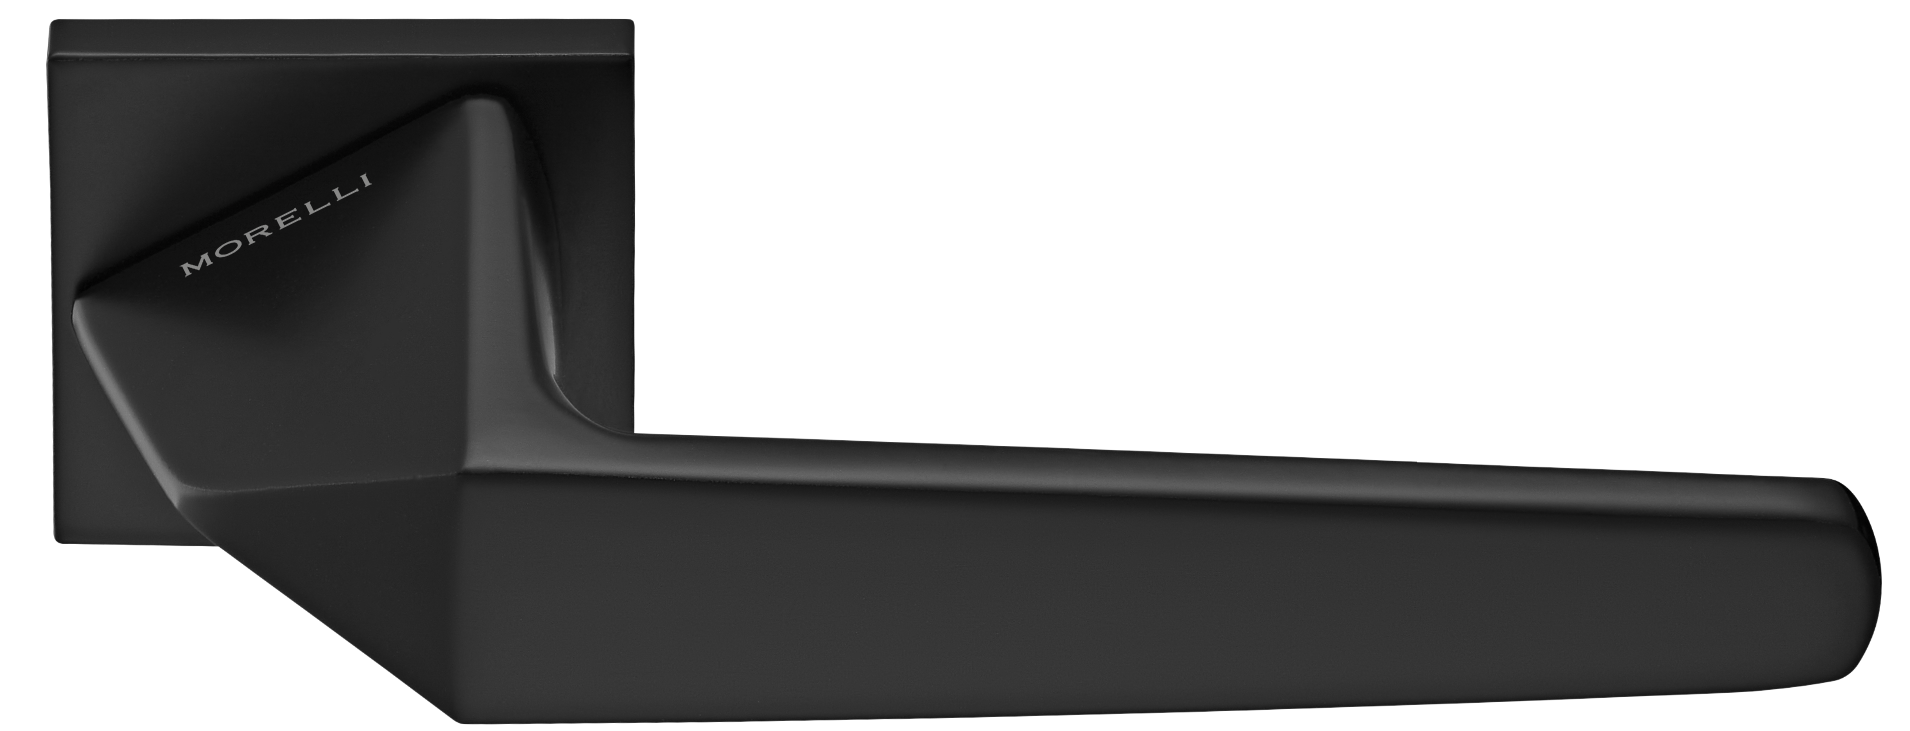 SOUK ручка дверная на квадратной розетке 6 мм, MH-55-S6 BL, цвет - черный фото купить Красноярск